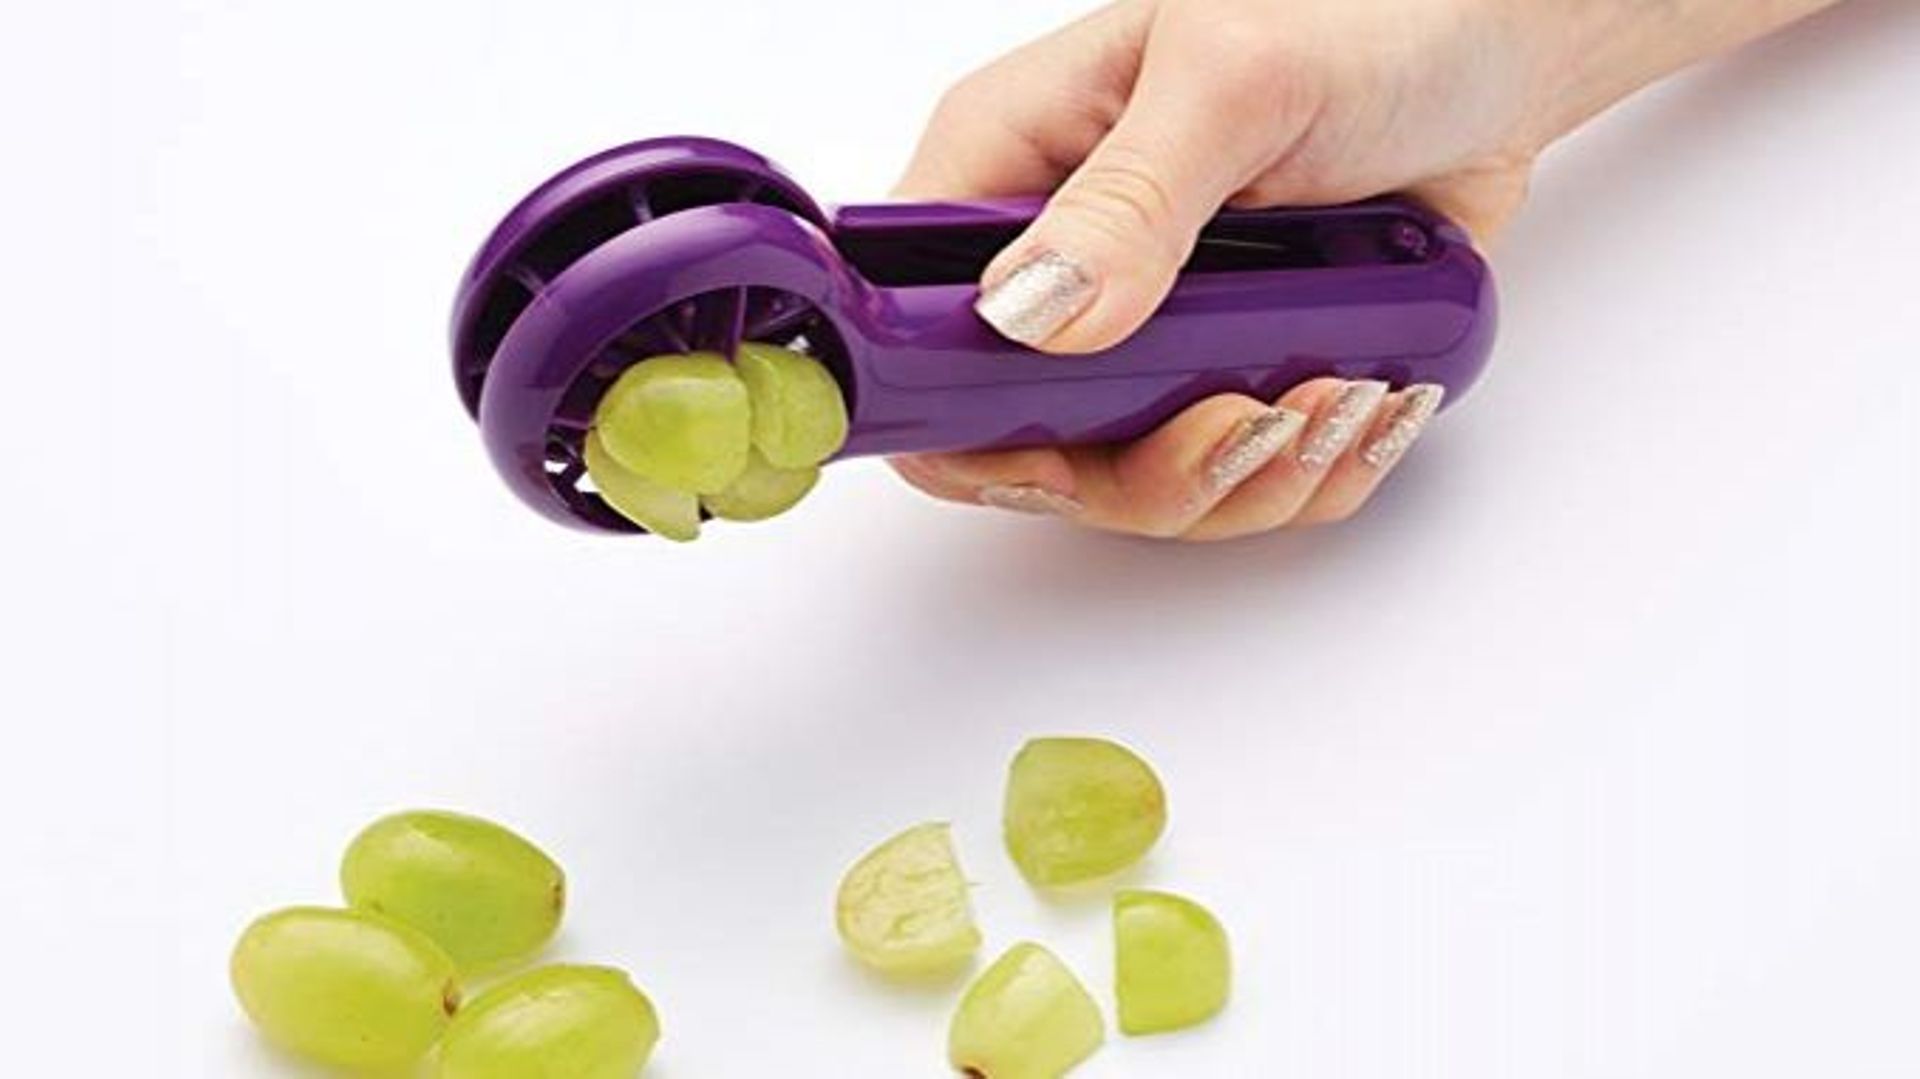 Le gadget insolite de Candice: la pince à raisins 